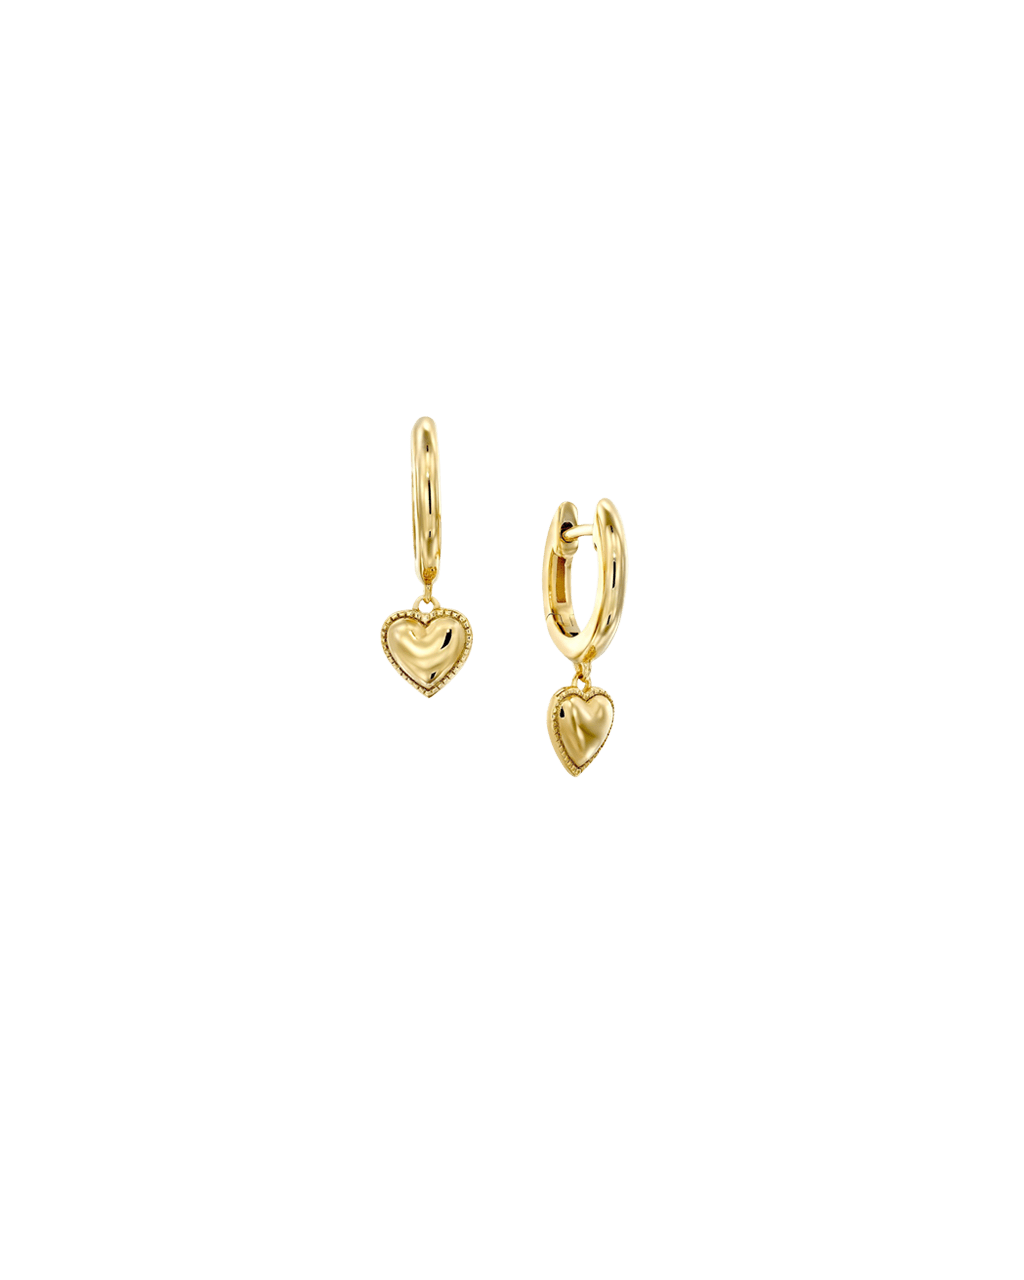 Heart Pendant Huggies- 925 Sterling Silver Earrings magal-dev 